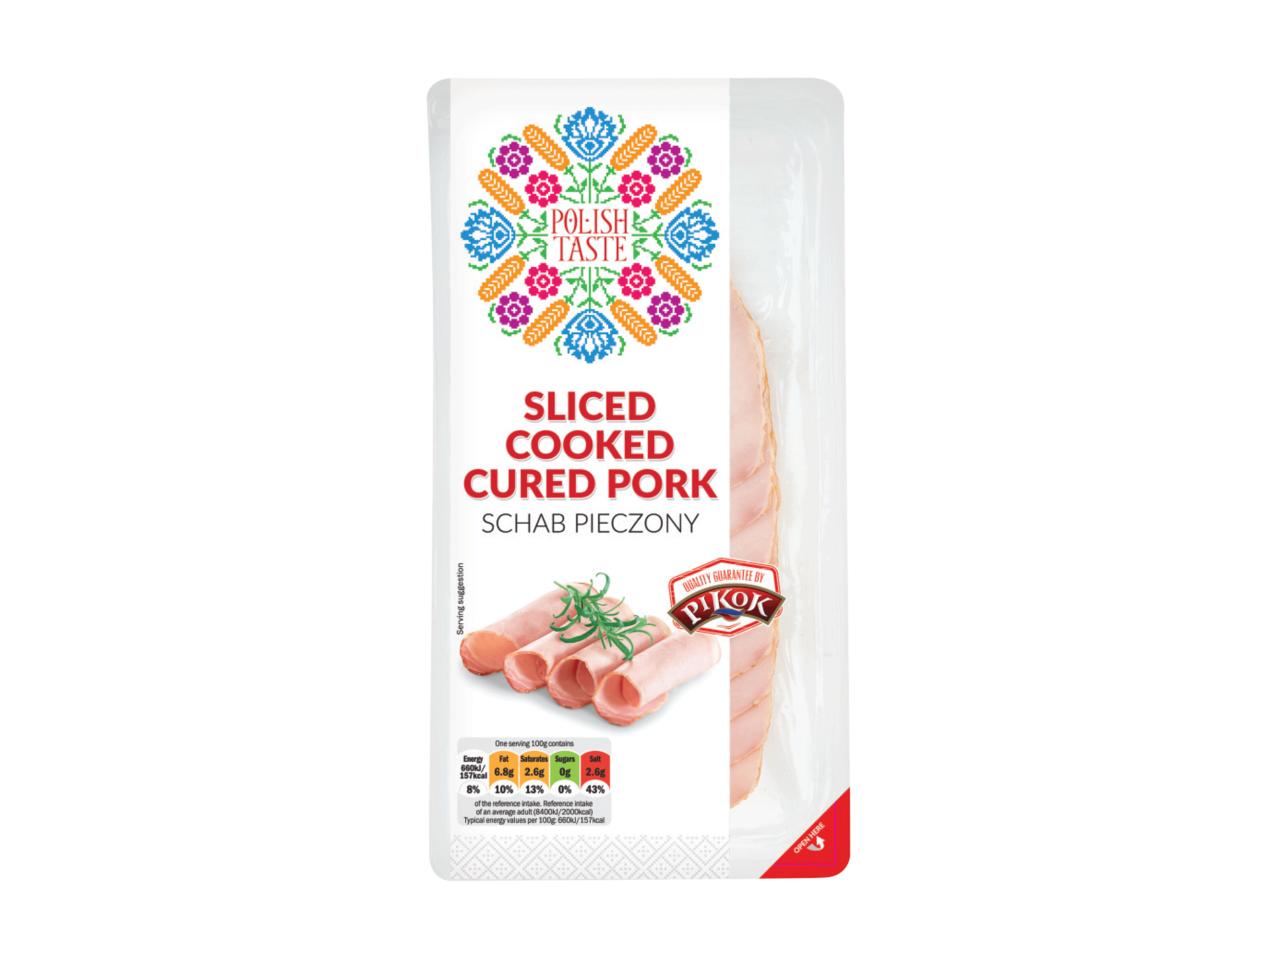 Sliced Cooked Cured Pork